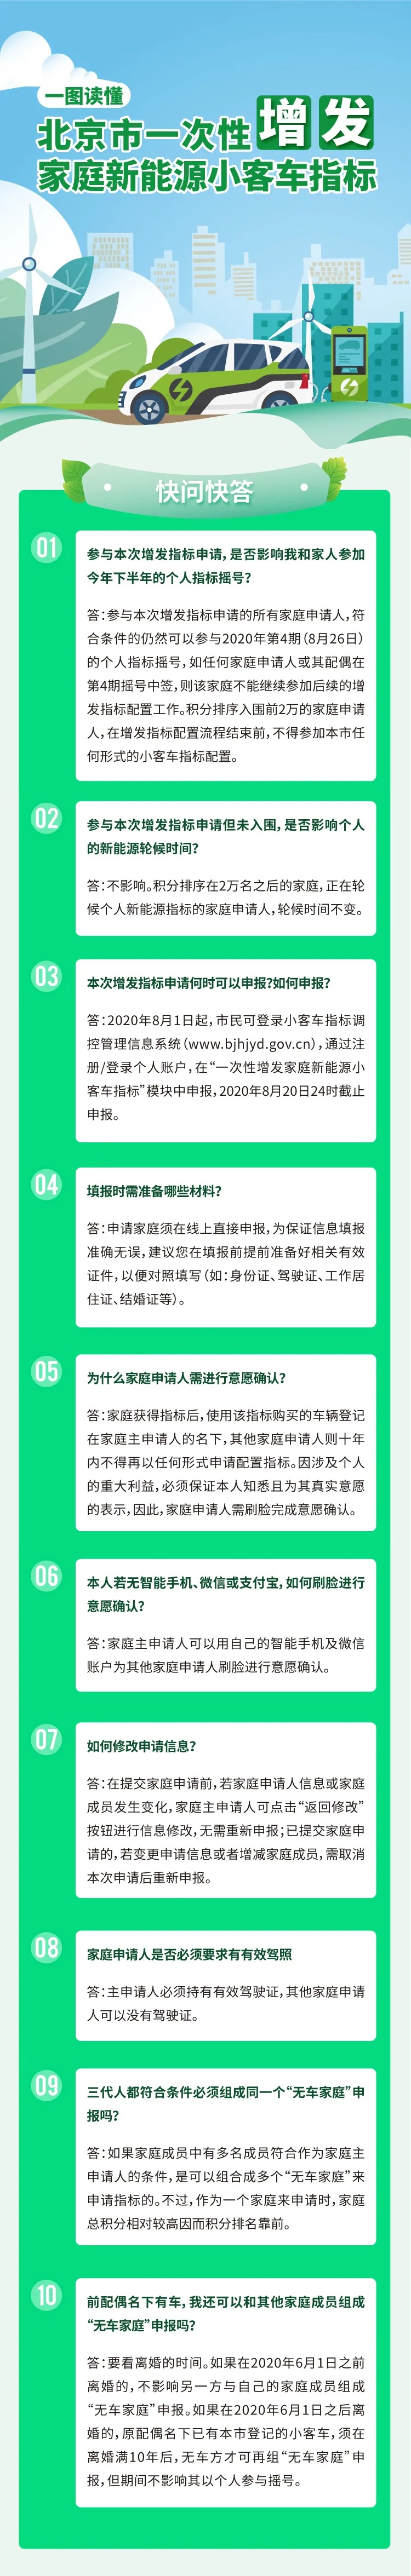 圖解：北京市一次性增發家庭新能源小客車指標快問快答.jpg